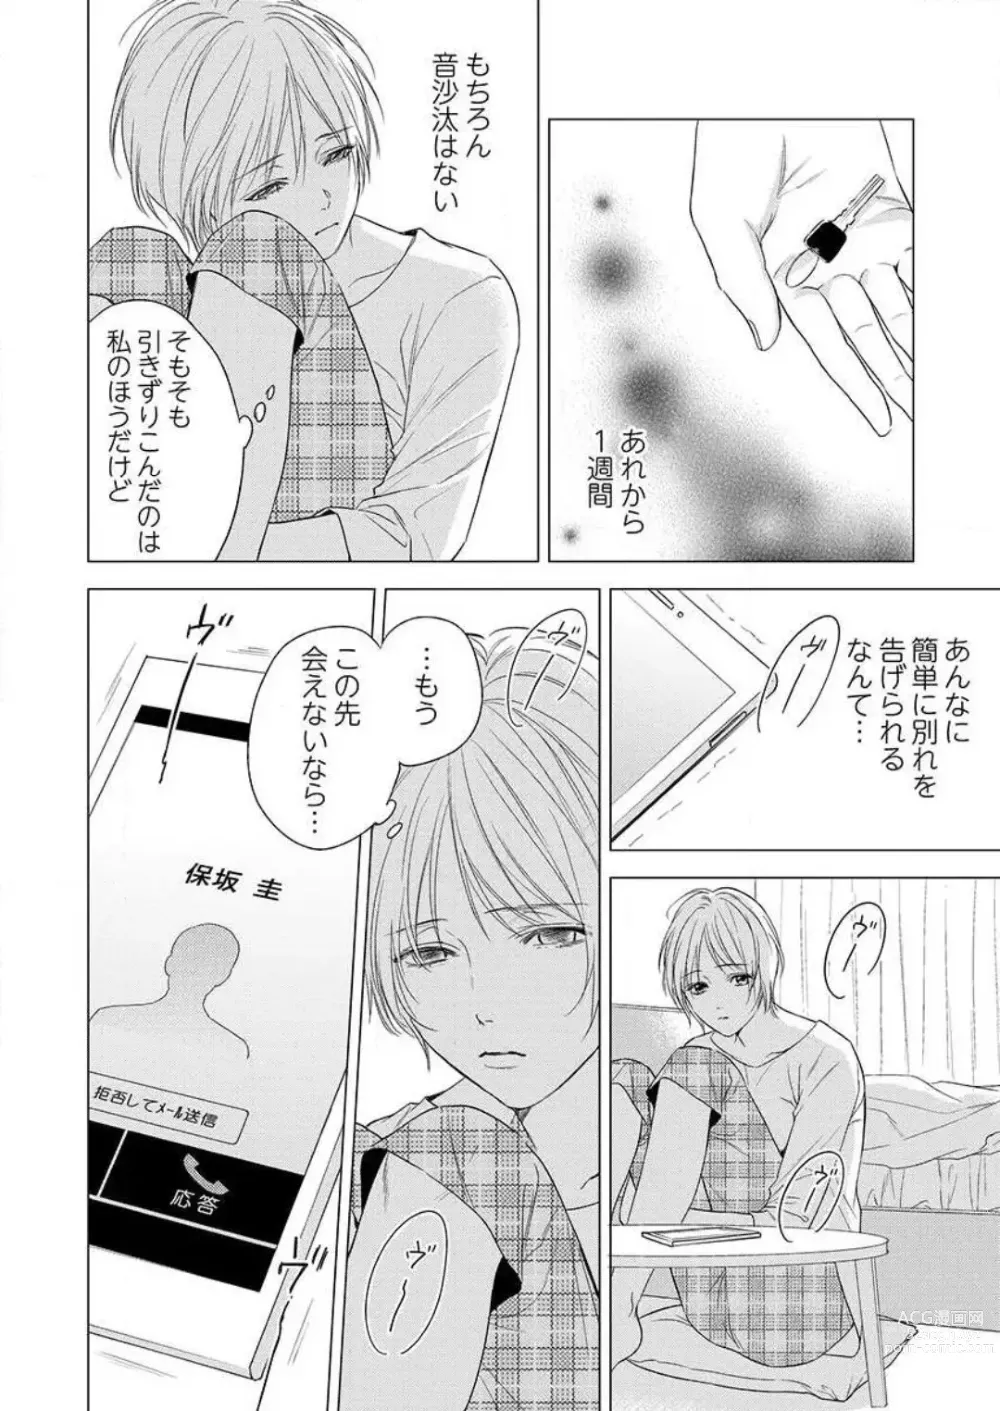 Page 139 of manga Furin Shoya, Yurusarenai Koi ni Oboreru Karada... 1-6